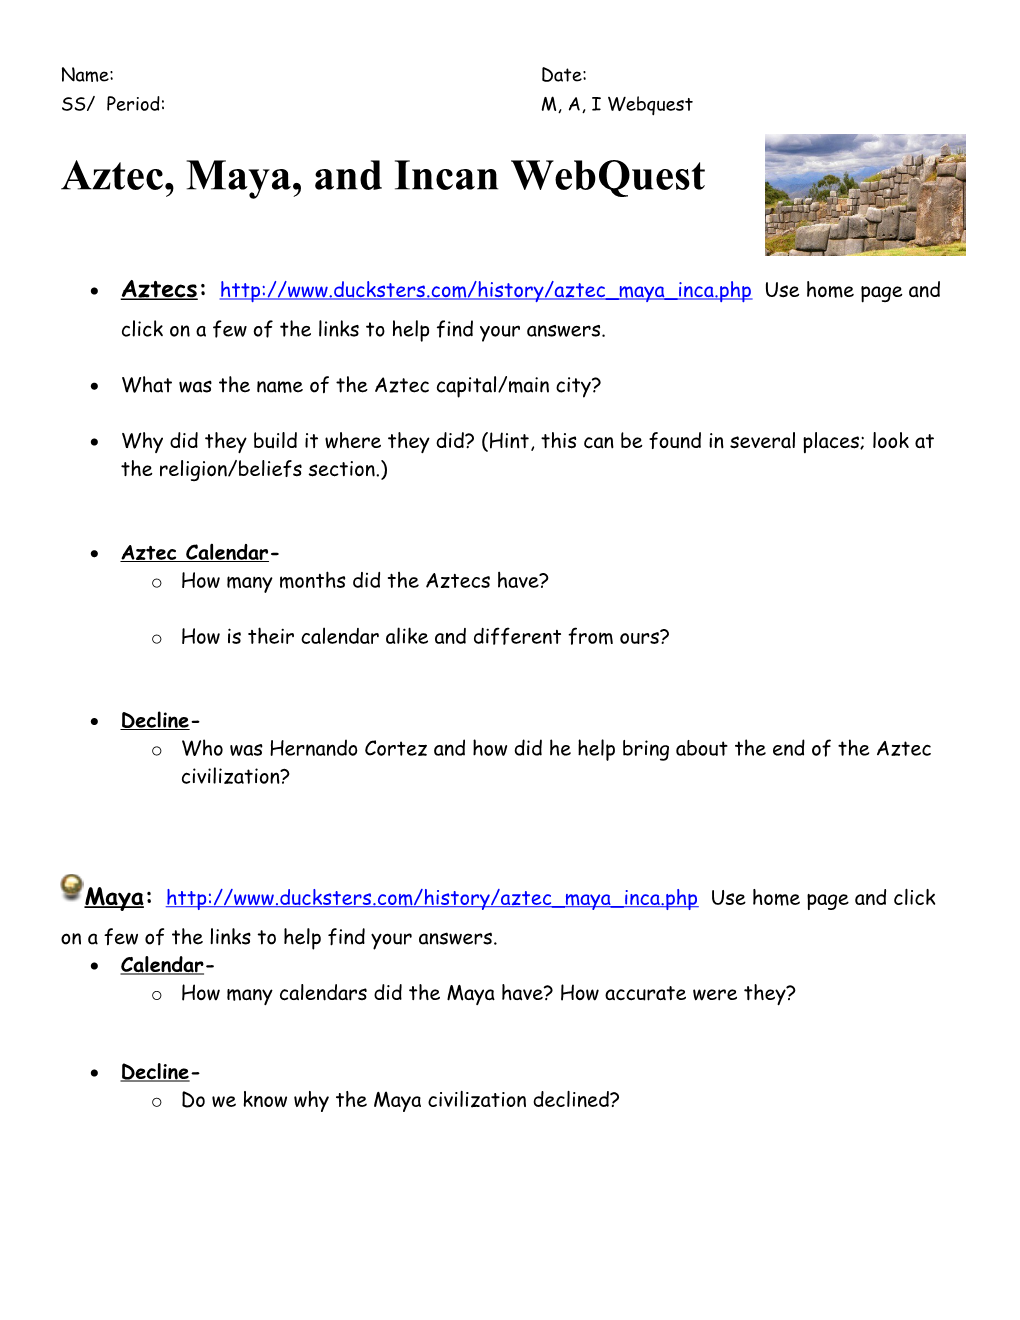 Aztec, Maya, and Incan Webquest